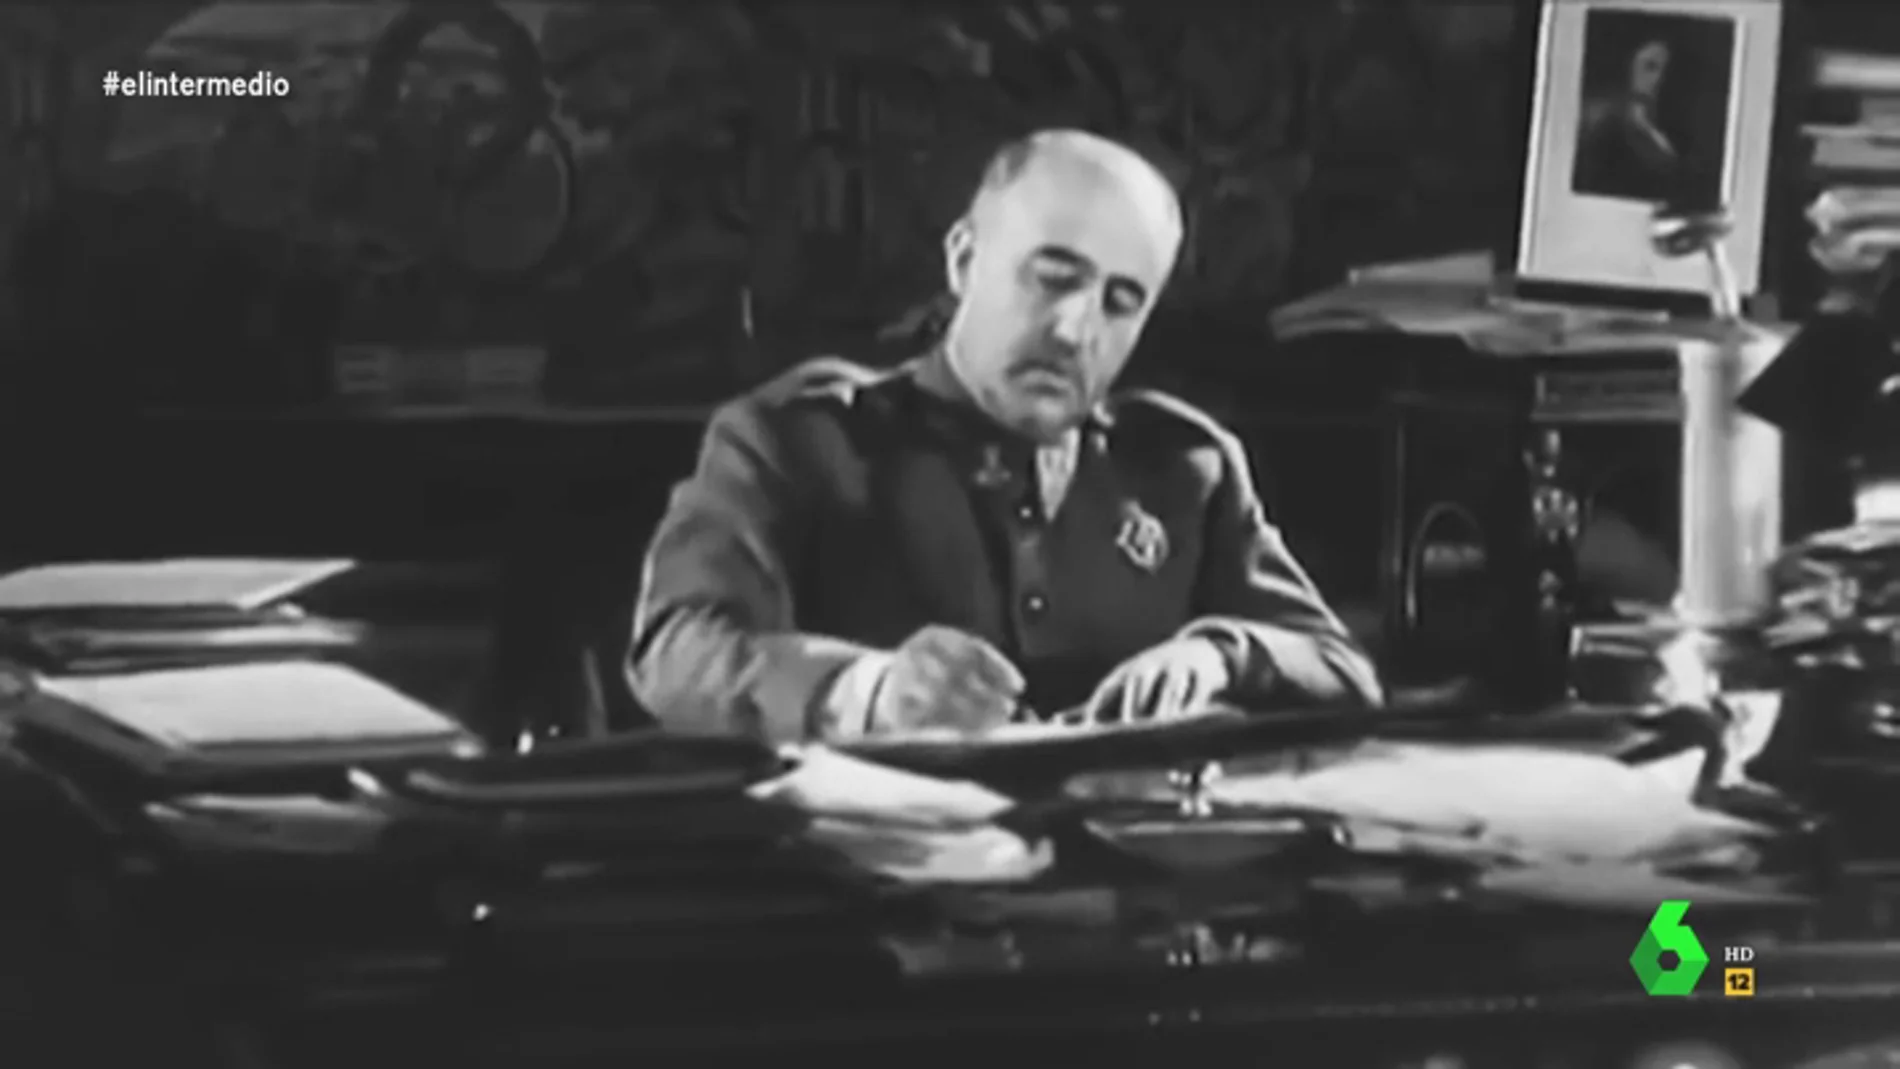 La 'carta' de Franco tras conocer el aval a su exhumación: "Me tienen los rojos hasta el huevo"